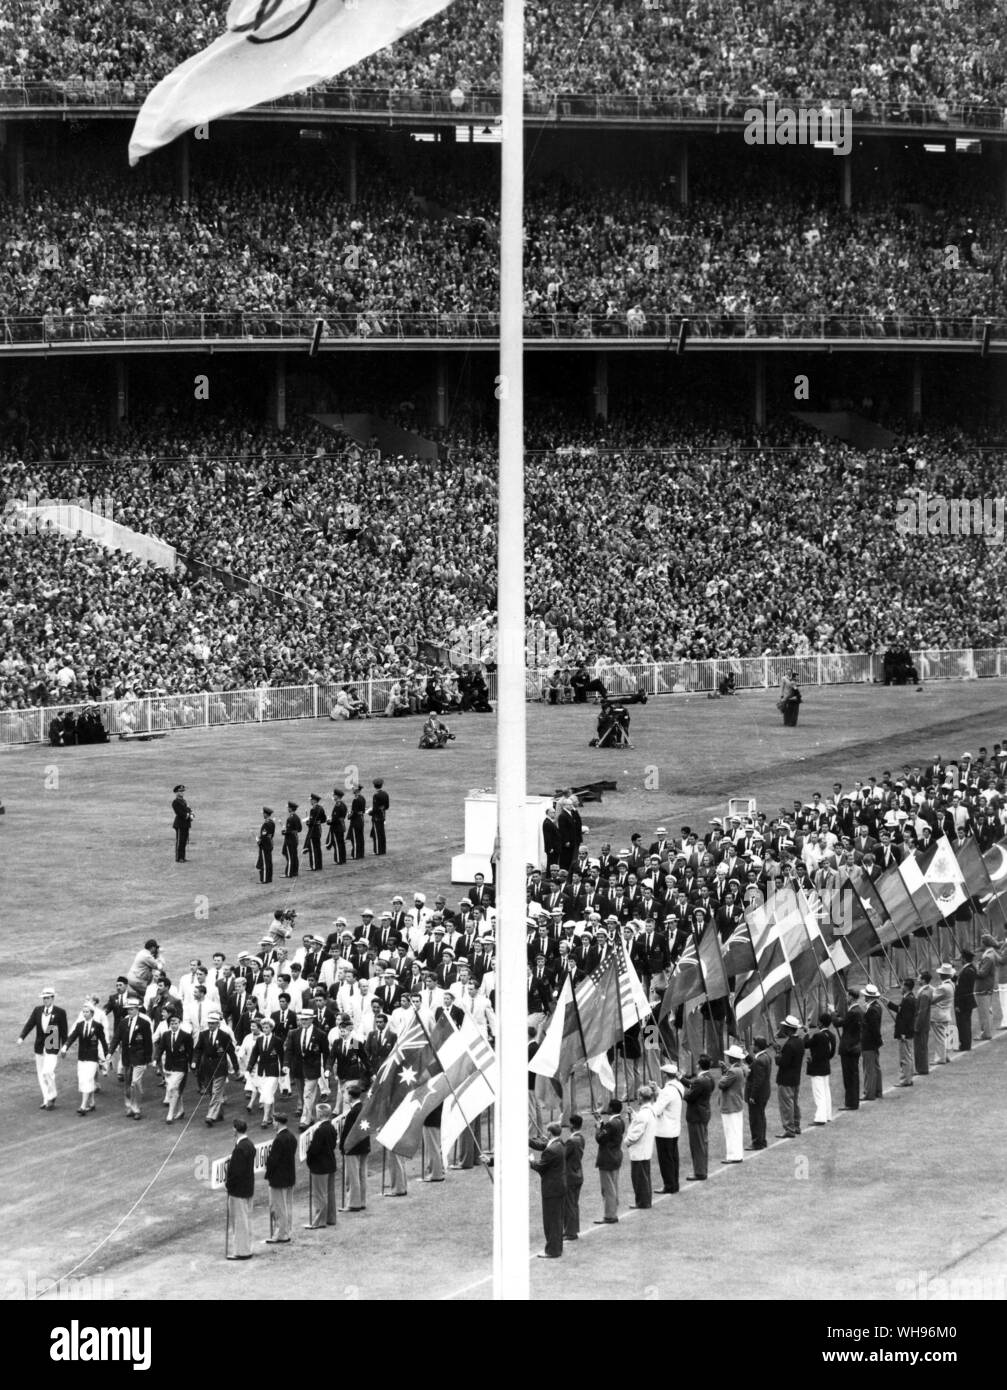 Aus., Melbourne, Olimpiadi, 1956: cerimonia di chiusura Foto Stock